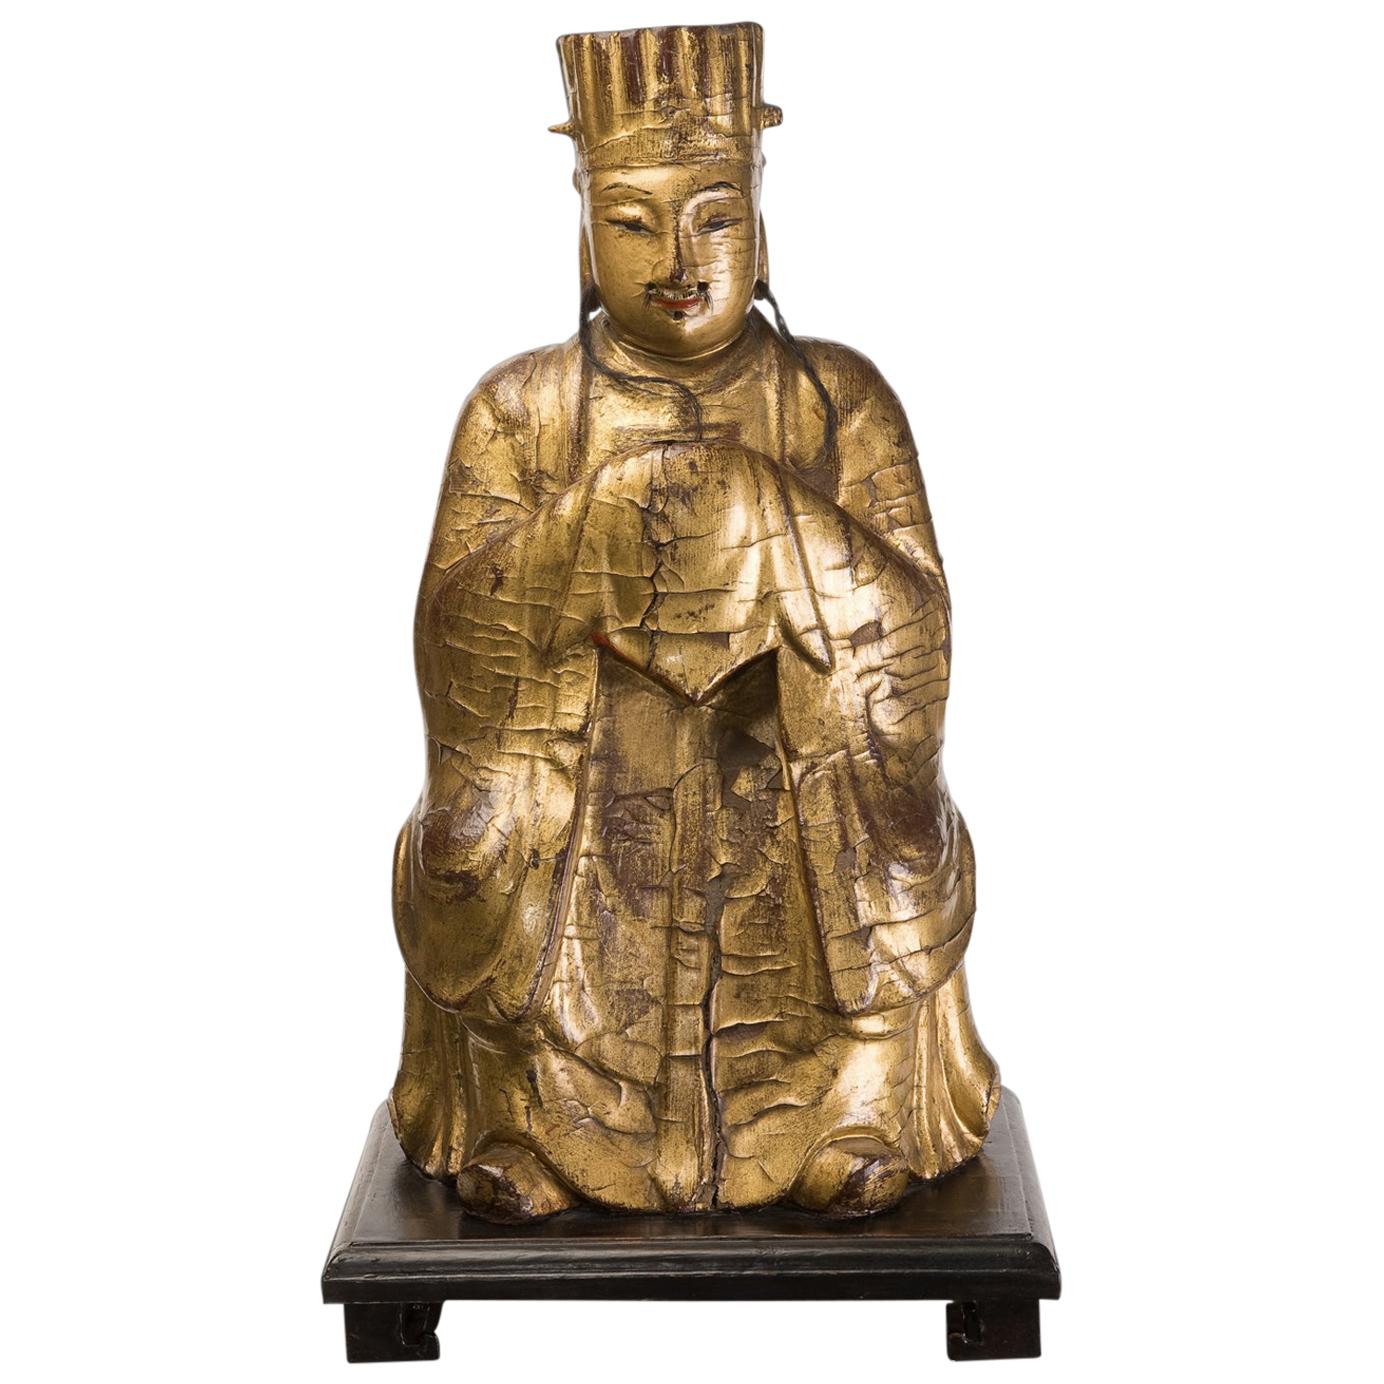 Chinesische Dignatary-Figur aus vergoldetem und bemaltem Holz, 18. Jahrhundert